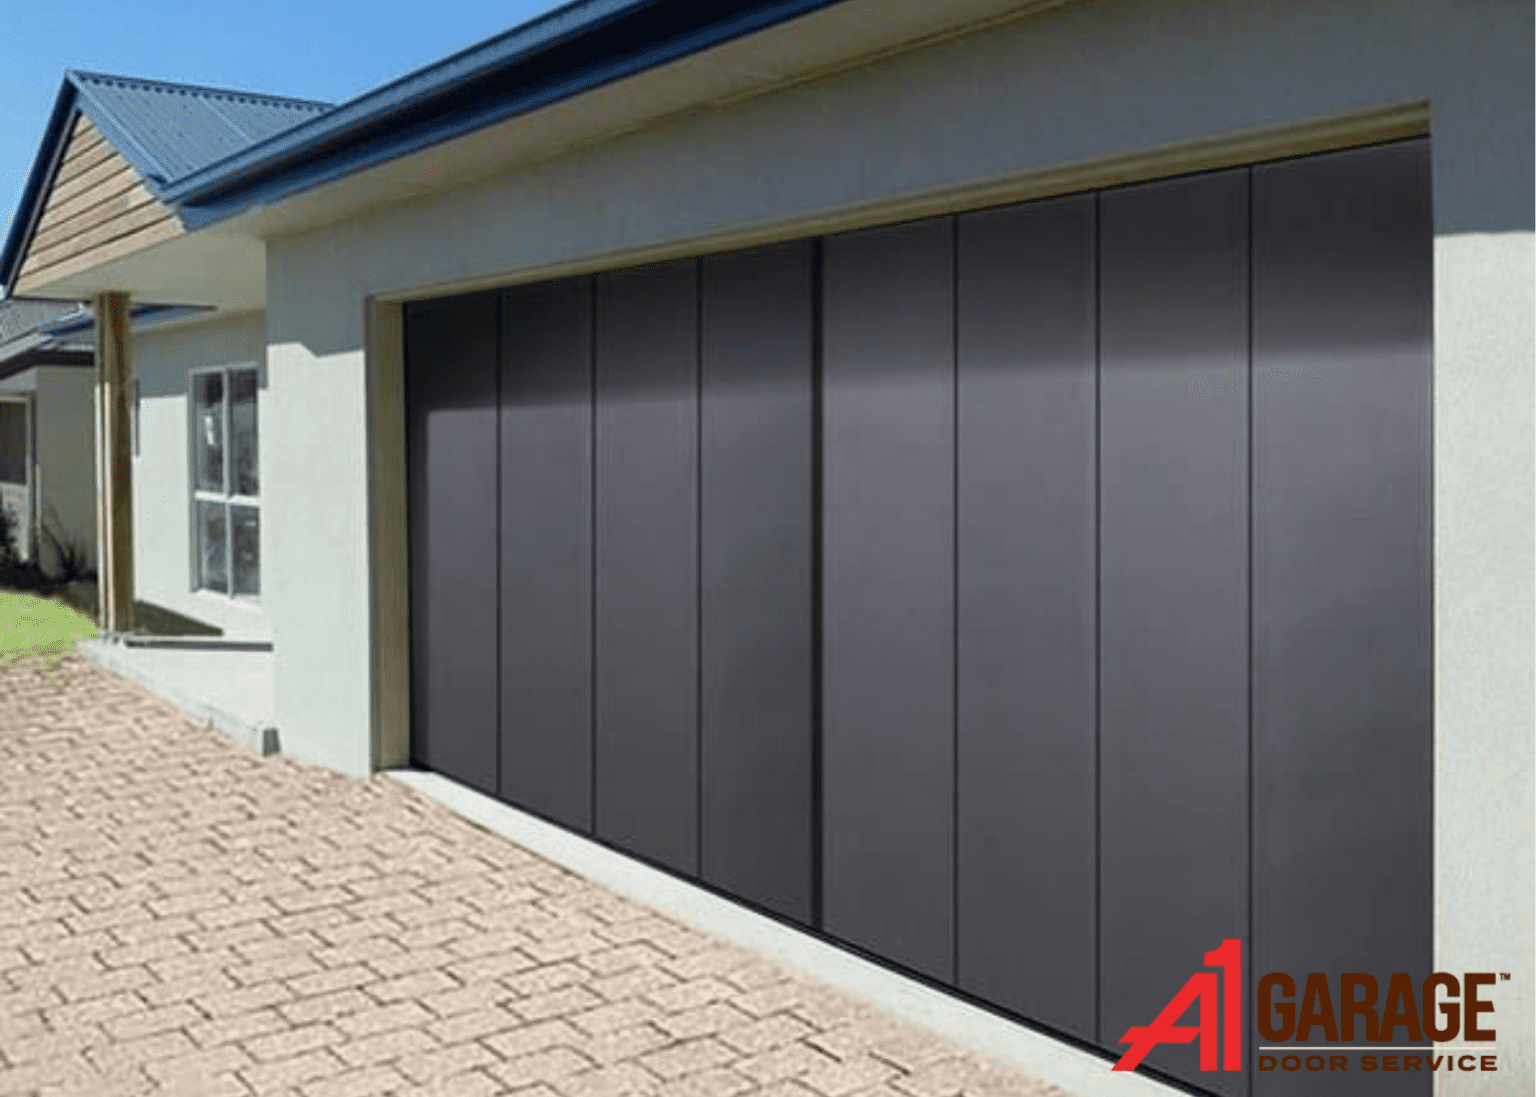 Aluminum garage door - A1 Garage 22 1536x1097